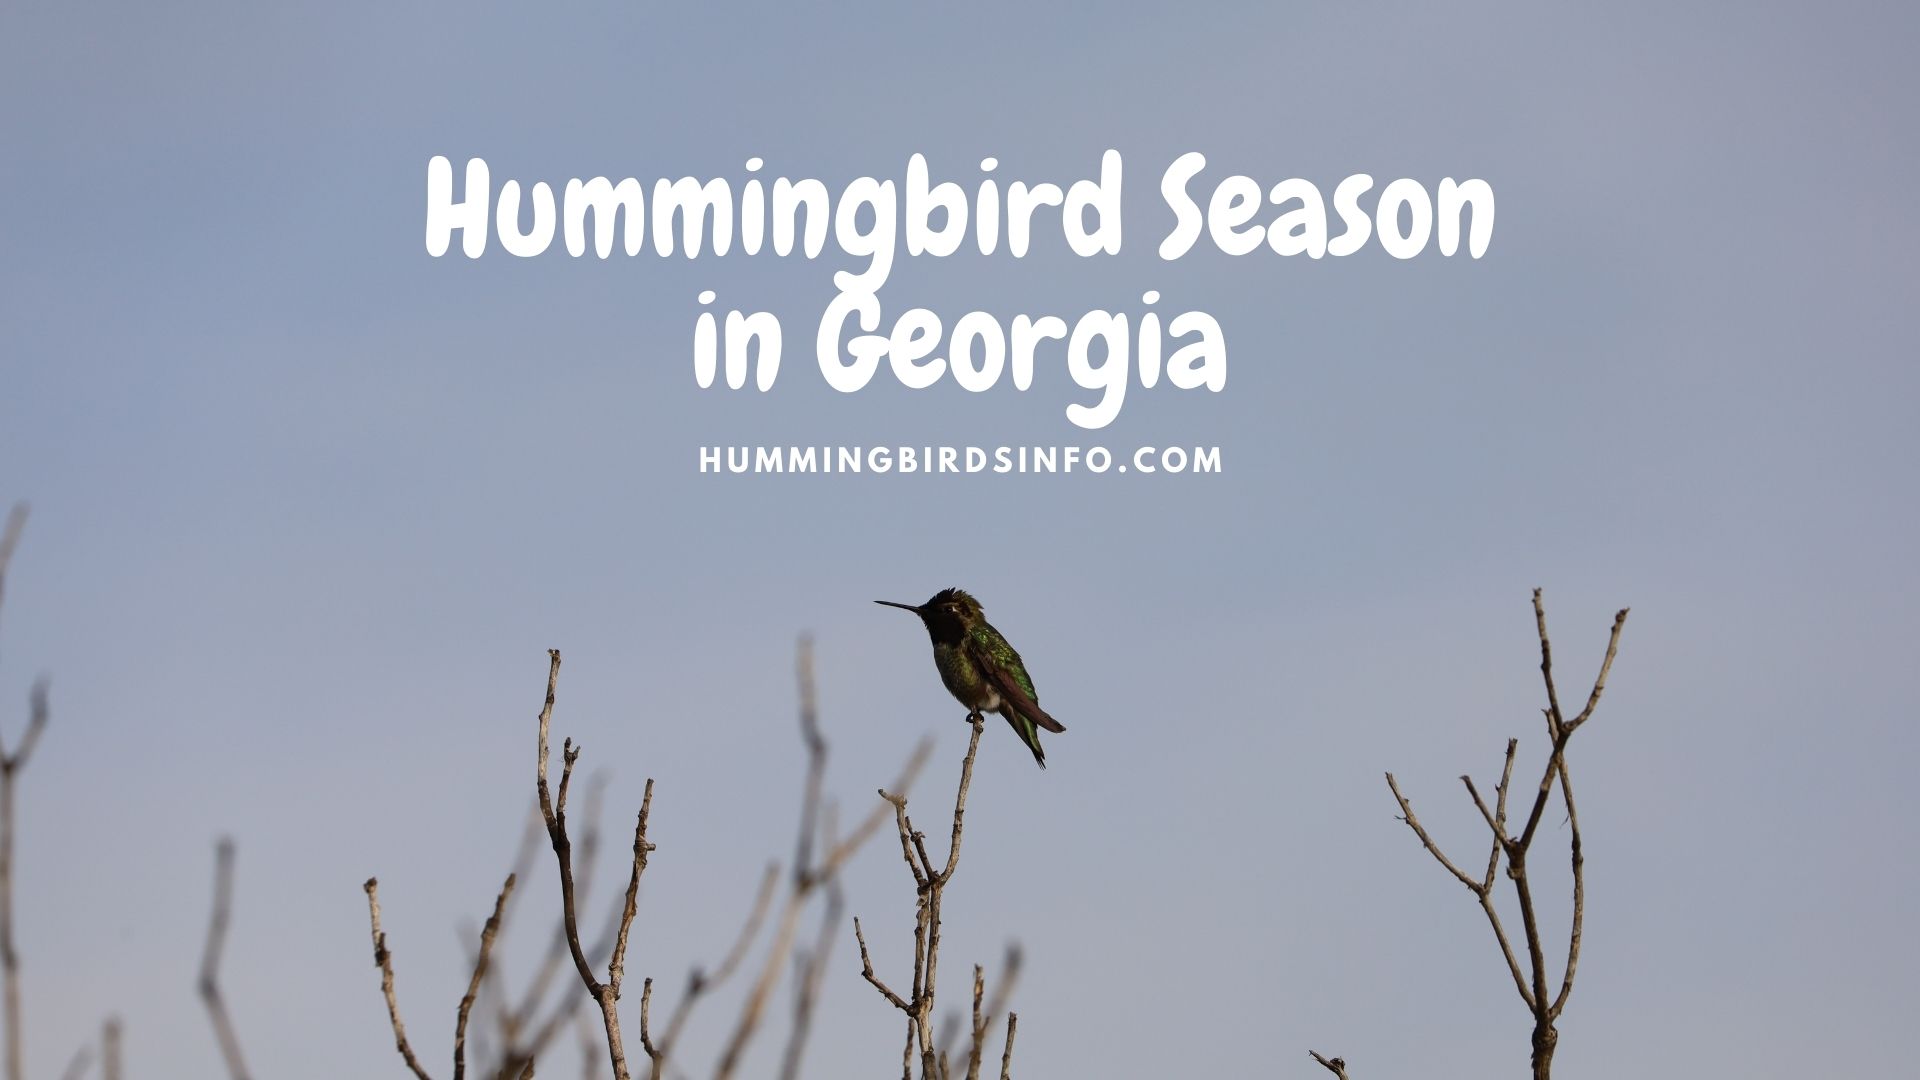 Hummingbird Season in Georgia